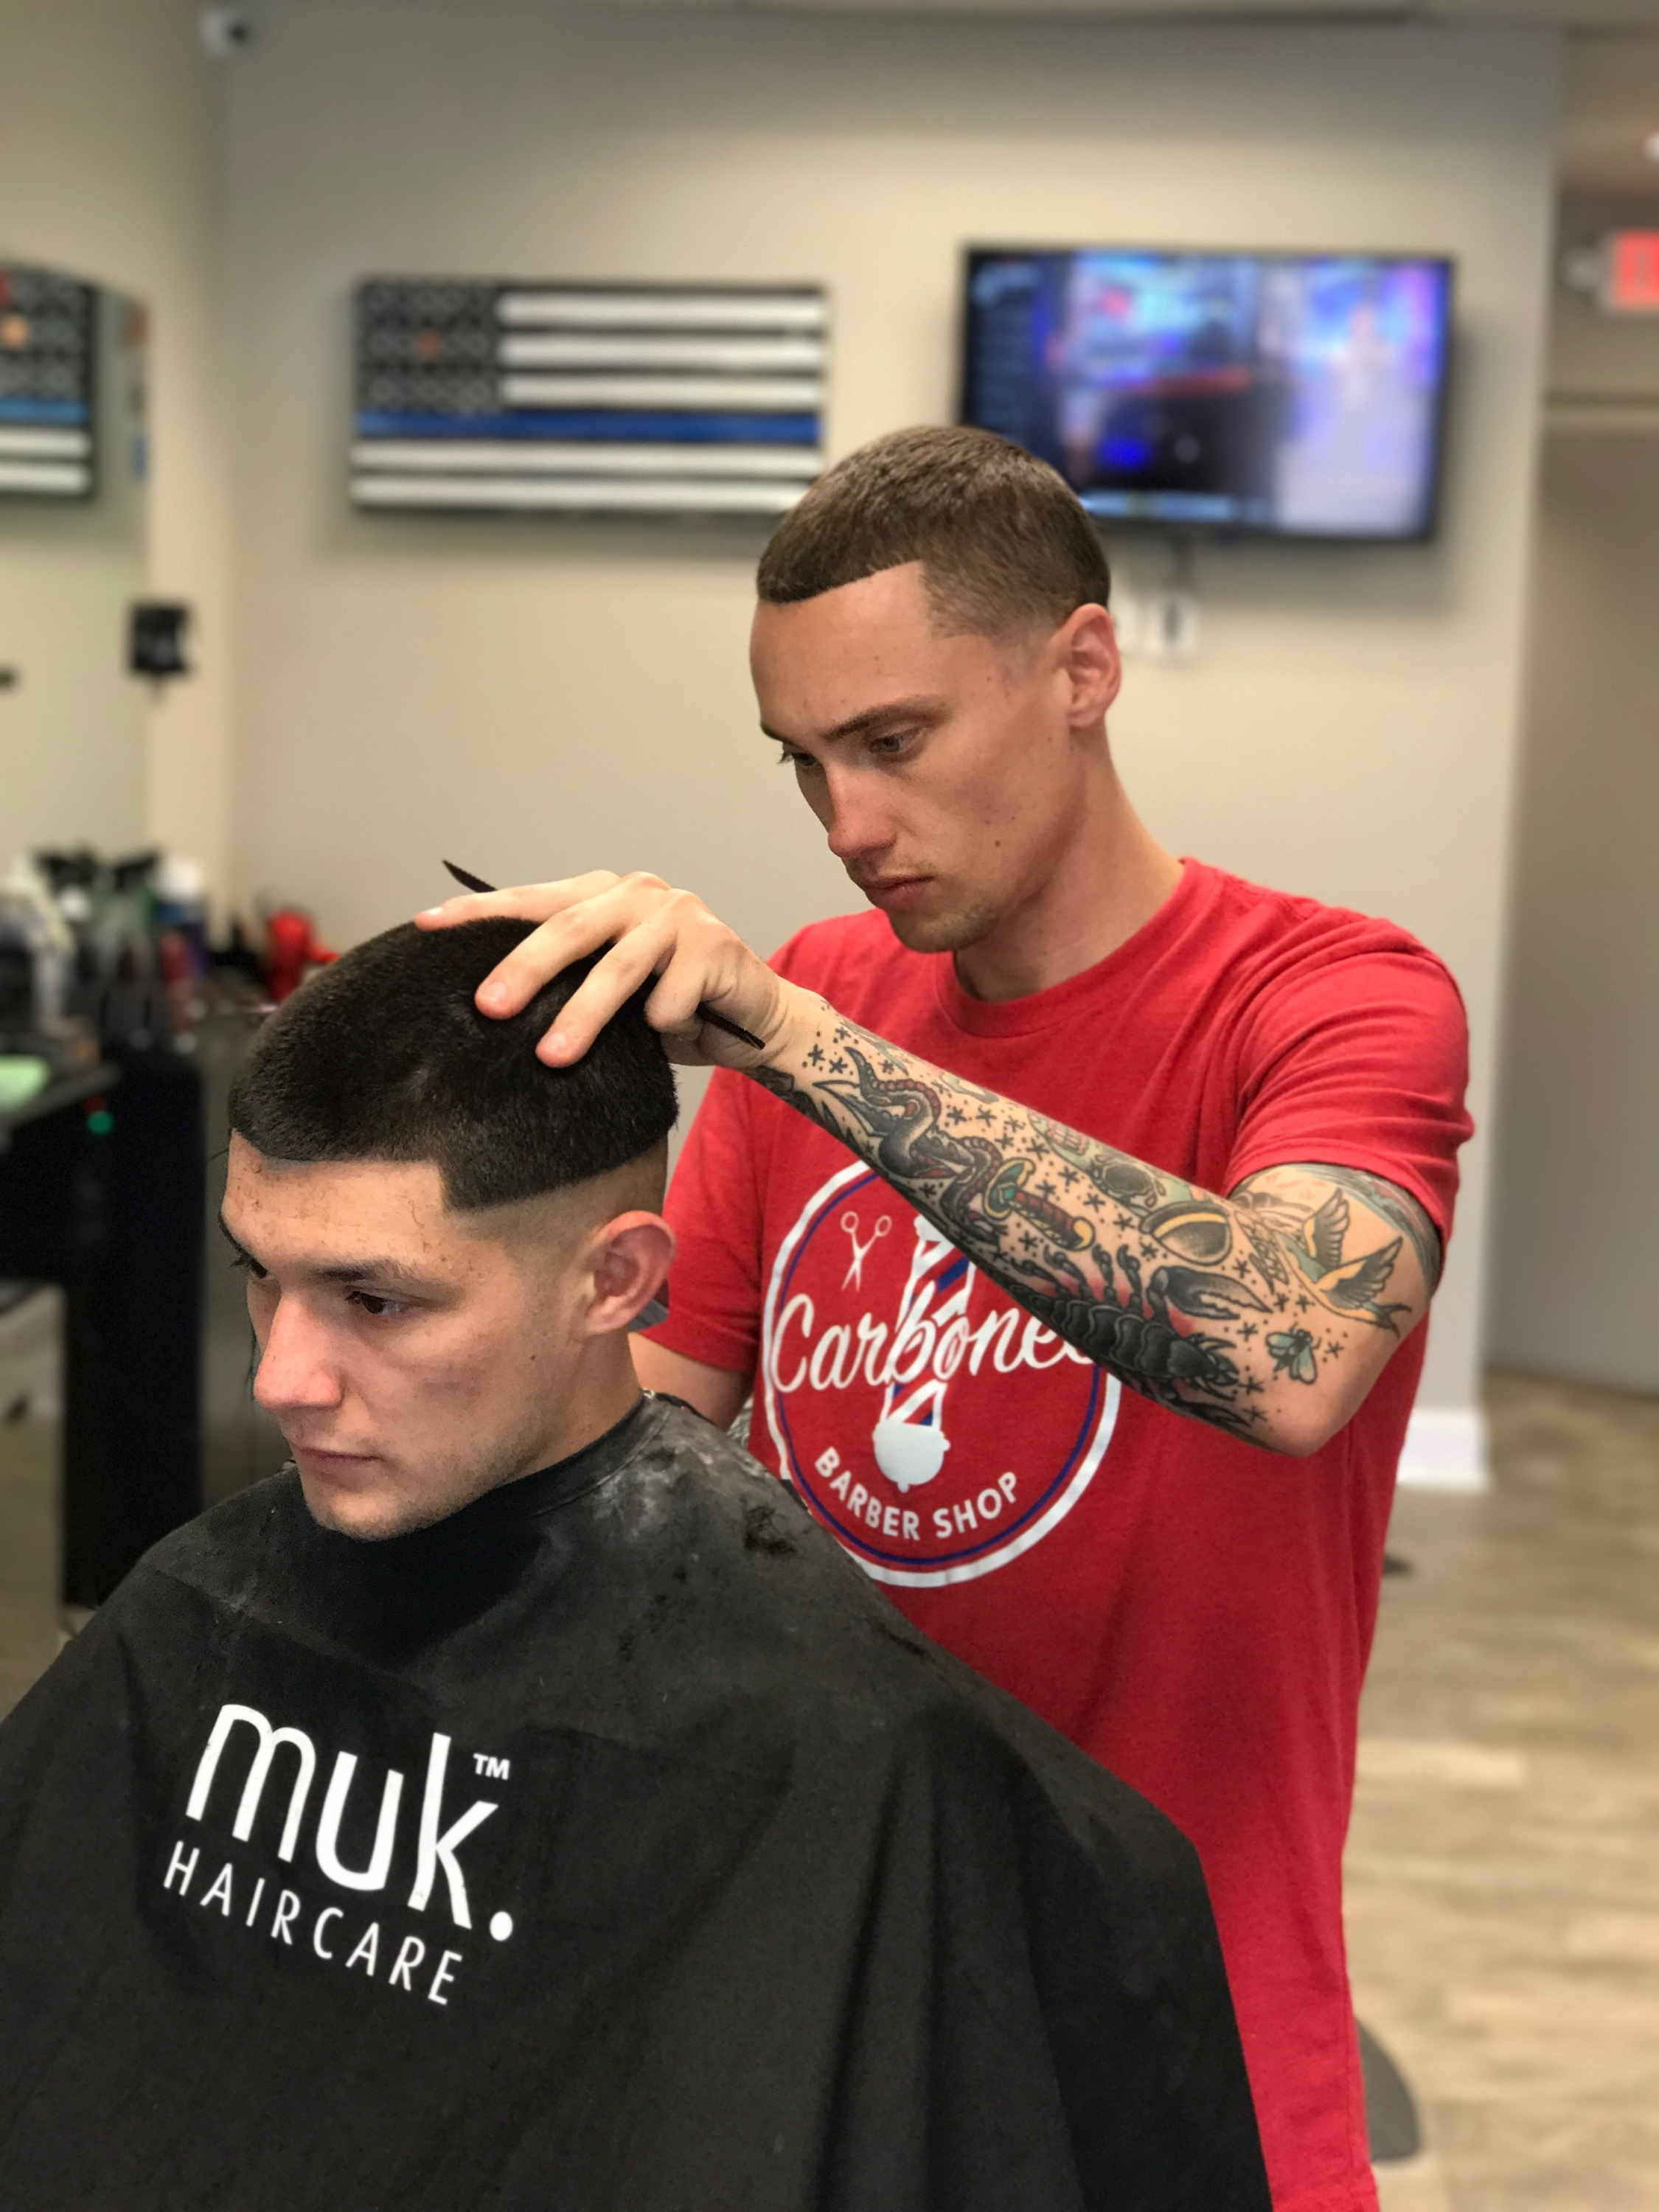 Barbers — Carbone's Barbershop